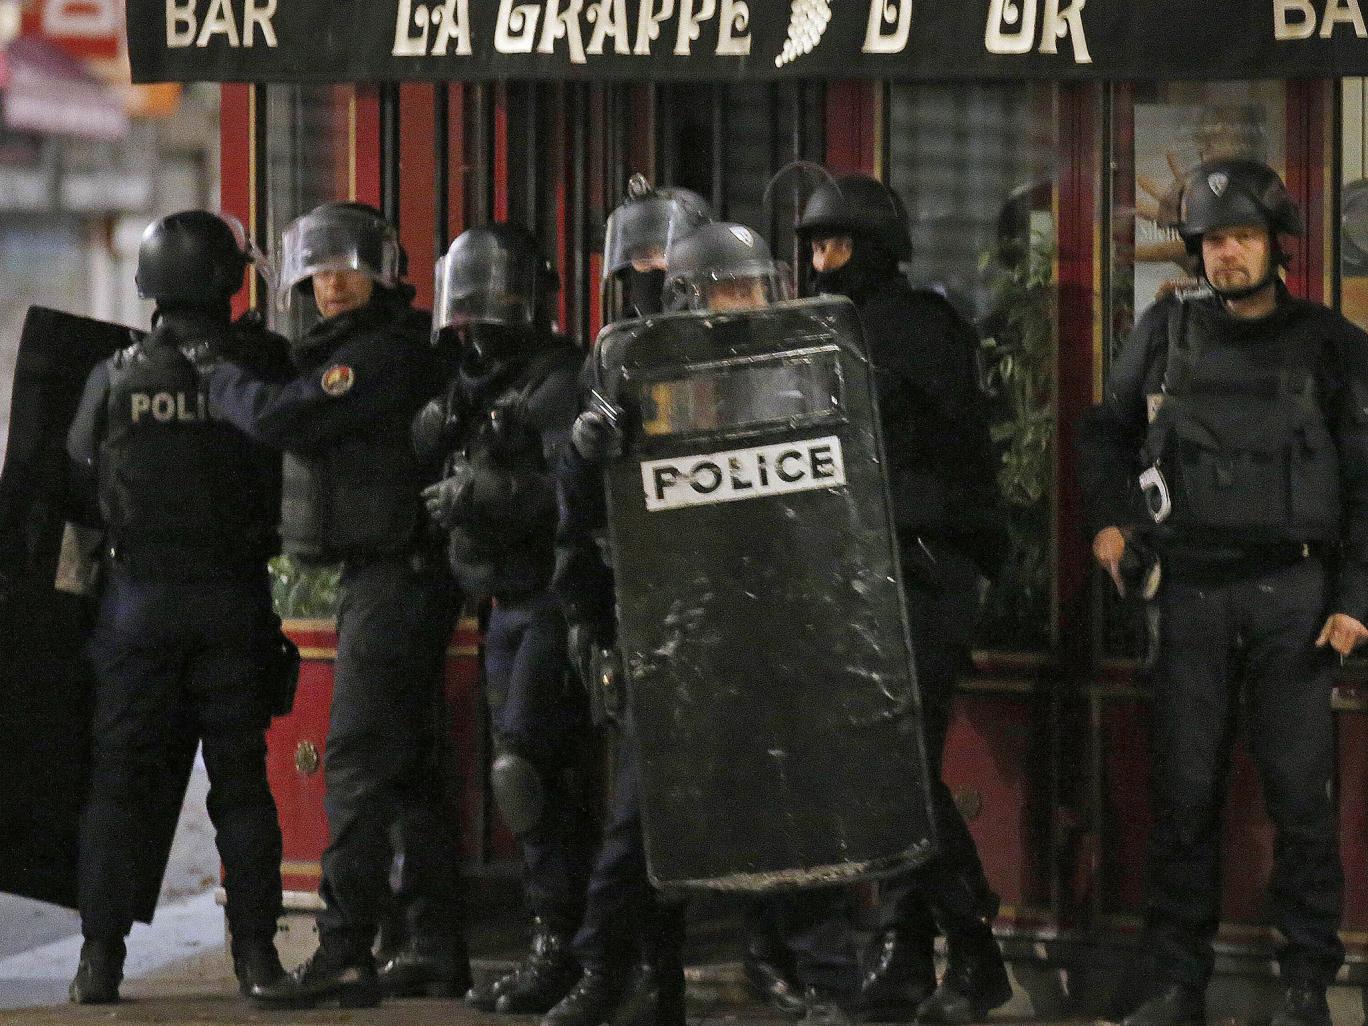 Γαλλική αστυνομία στους δημοσιογράφους: Μεταδίδετε όσο το δυνατόν λιγότερα